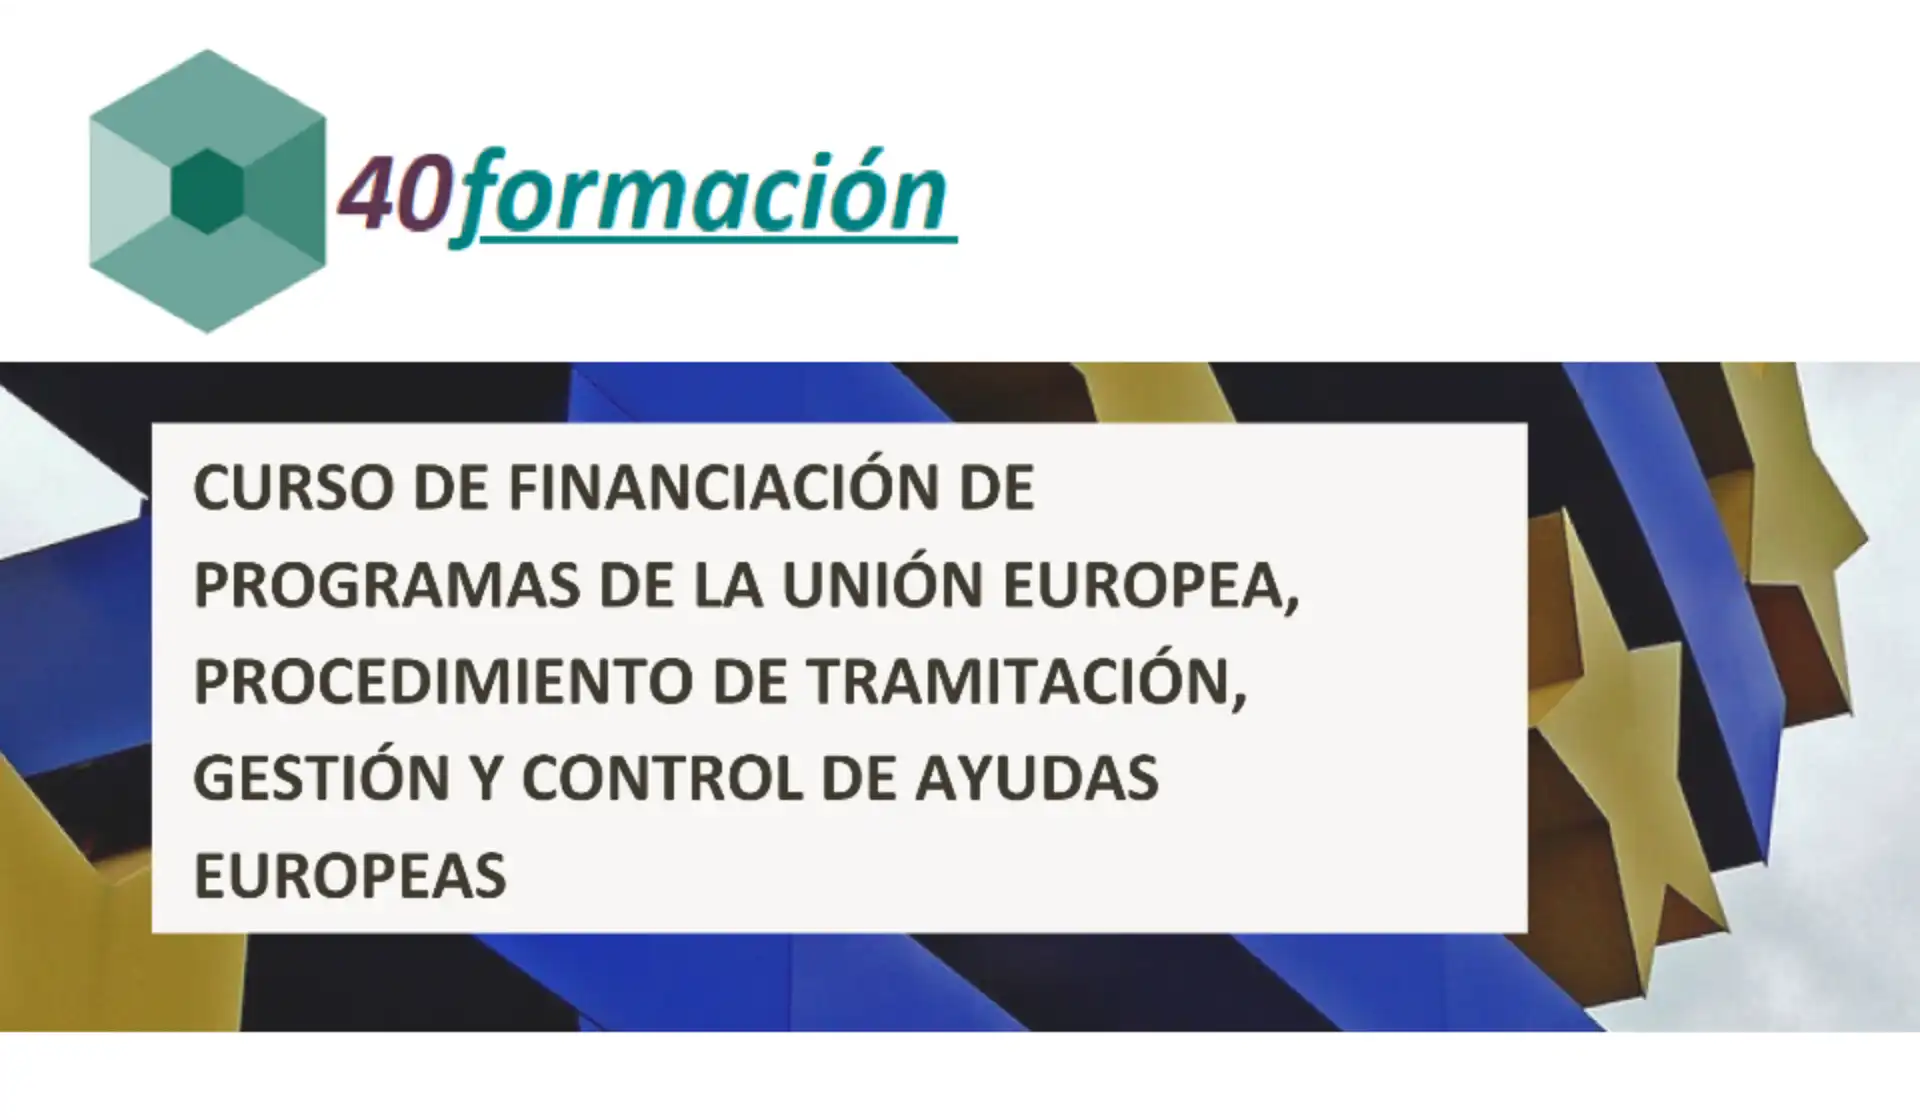 Financiacion de programas de la union europea tramitacion gestion y control 960w 560h